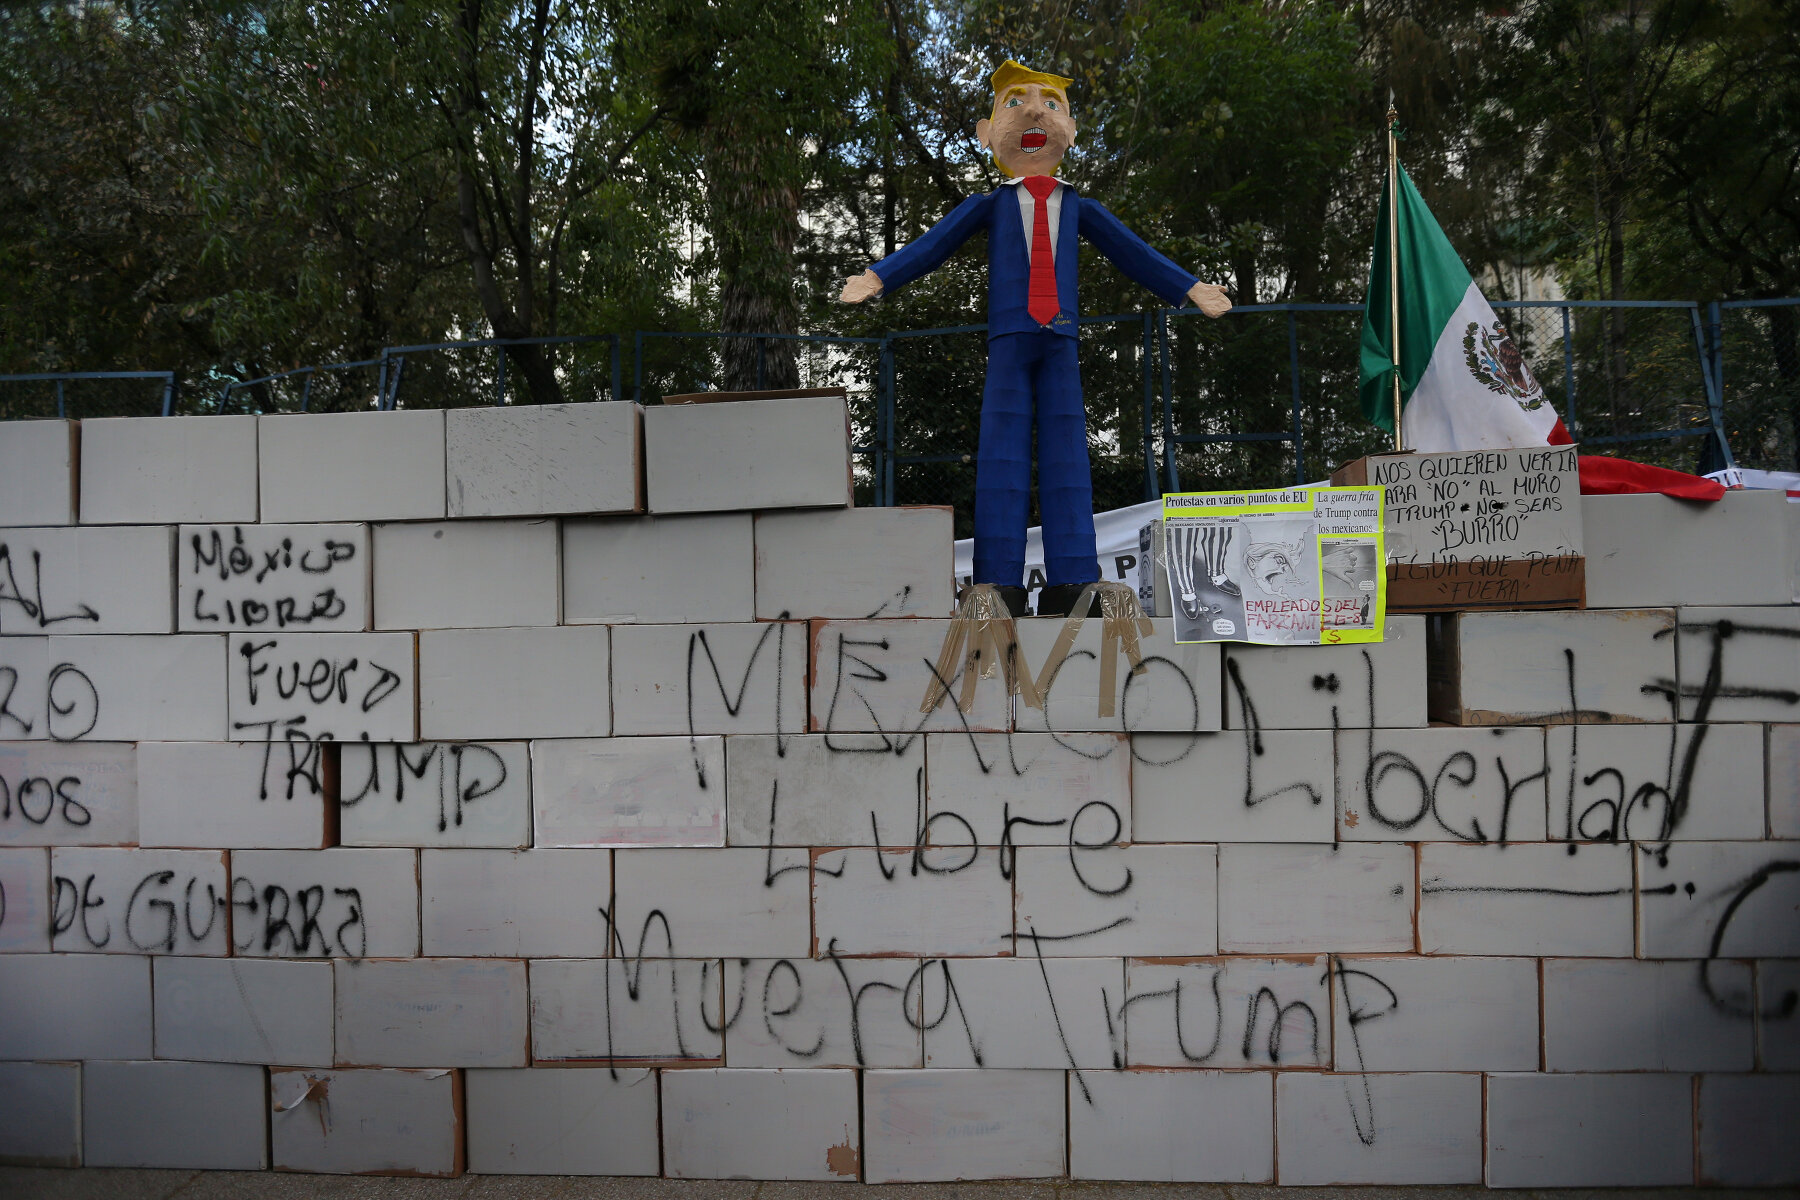 <p><strong>Стена на границе в Мексикой</strong></p>

<p>Возведение стены на границе с Мексикой стало одним из самых ярких предвыборных обещаний Трампа. Заплатить за строительство должна была Мексика.&nbsp;Точно оценить стоимость стены сложно, некоторые оценки <a href="http://money.cnn.com/2017/01/25/news/economy/trump-mexico-border-wall-cost/">достигали</a> 25 миллиардов долларов. Президент страны&nbsp;Энрике Пенья Ньето не раз говорил, что &laquo;Мексика не верит в стены&raquo; и не будет за них&nbsp;платить. Администрация Трампа предложила обложить мексиканский импорт налогом 20%, из которого и будет оплачено строительство. В <a href="http://edition.cnn.com/2017/03/16/politics/trump-budget-mexico-wall/">предложенном</a> Трампом бюджете на строительство стены был заложен один миллиард долларов, но эти расходы еще <a href="http://edition.cnn.com/2017/04/26/politics/trump-border-wall-funding/">должен</a> одобрить Конгресс.&nbsp;Сам Трамп <a href="https://twitter.com/realDonaldTrump/status/856849388026687492?ref_src=twsrc%5Etfw&amp;ref_url=http%3A%2F%2Fwww.cnn.com%2F2017%2F04%2F26%2Fpolitics%2Ftrump-border-wall-funding%2Findex.html">написал</a> в твиттере, что не изменил своей позиции и по-прежнему обещает построить стену.</p>